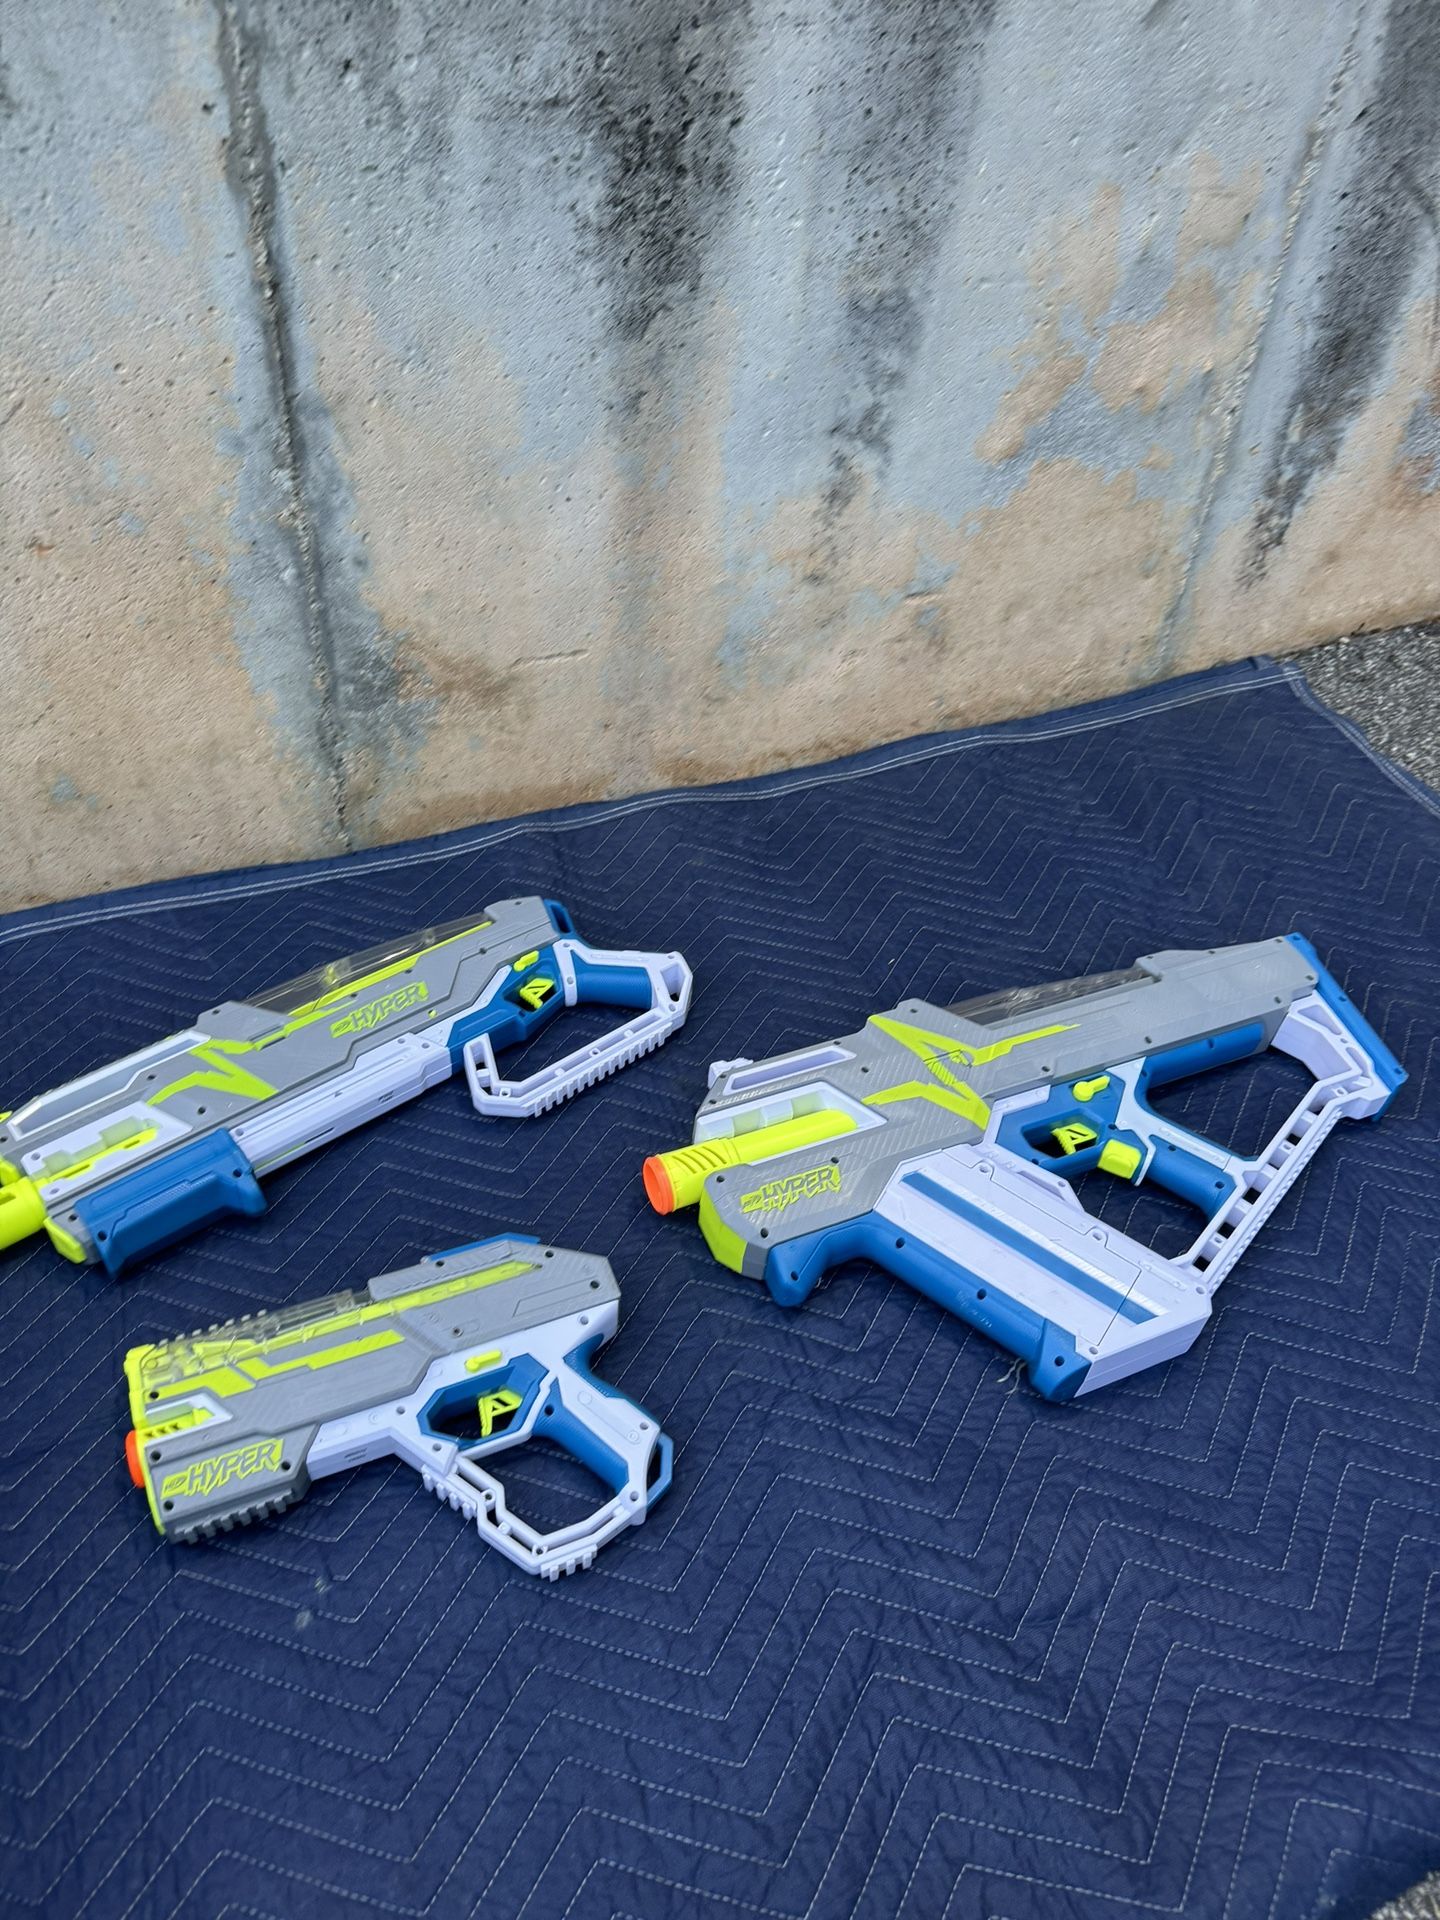 3 Nerf Guns for Sale